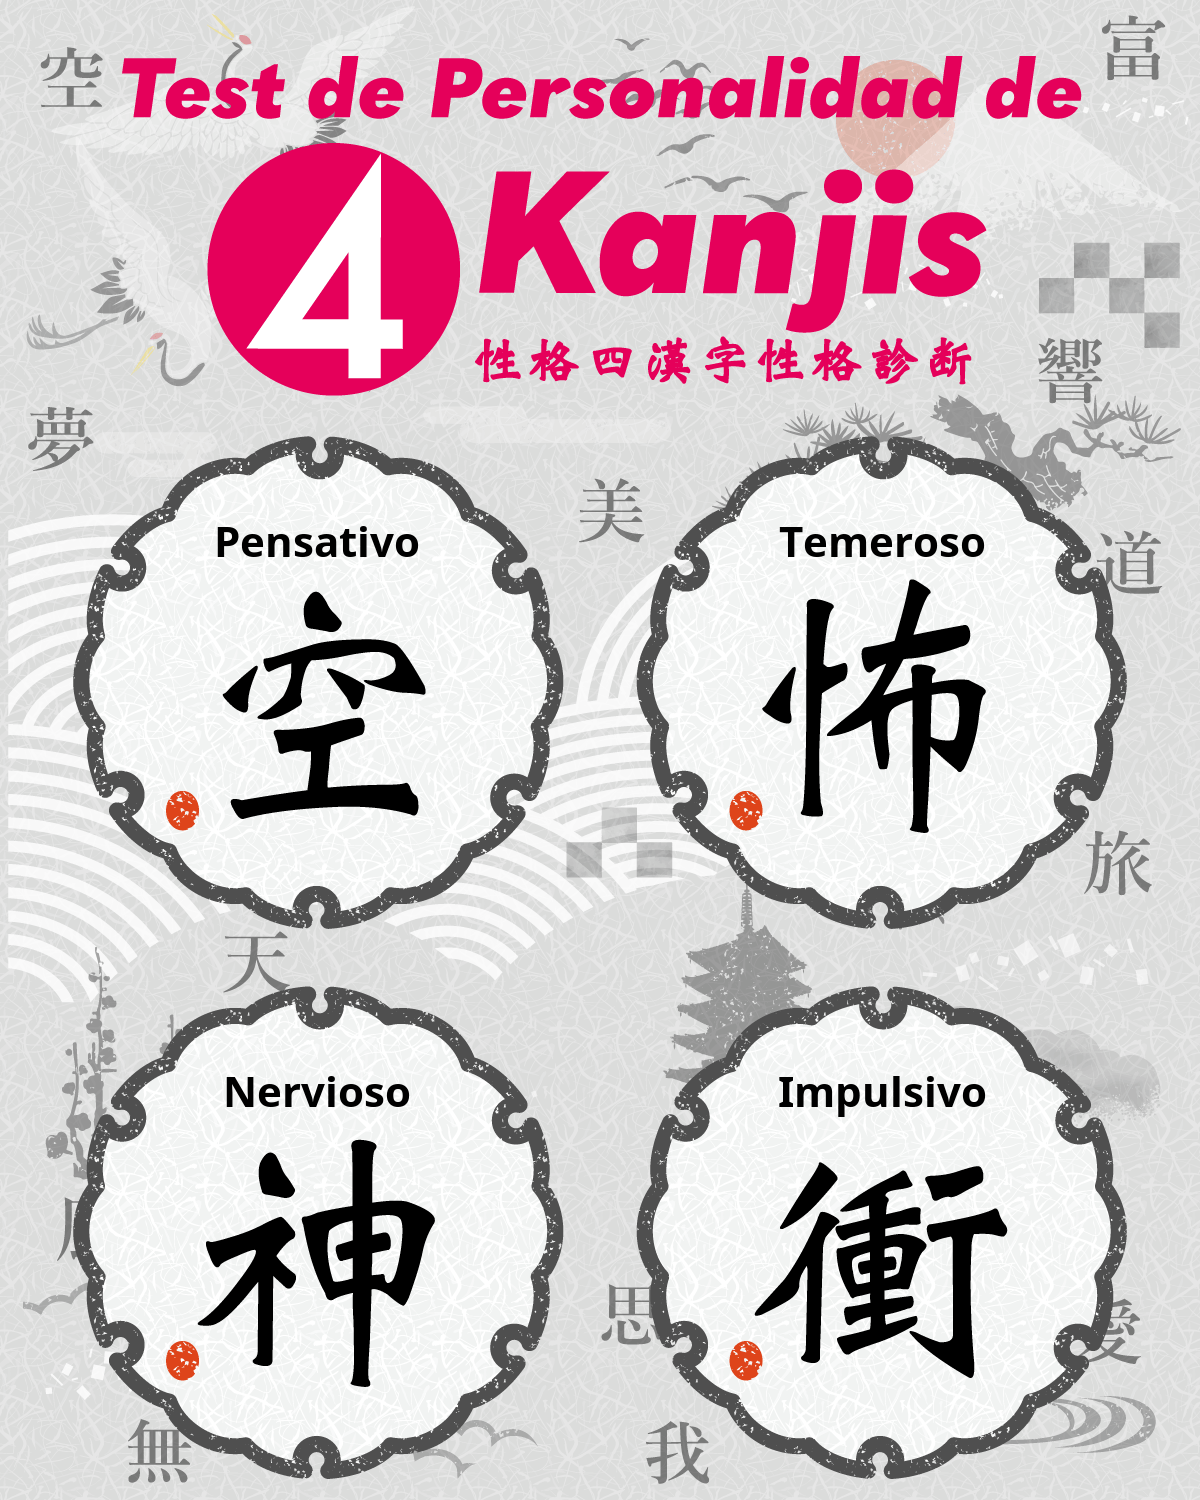 Test de Personalidad de 4 Kanjis | ¿Qué cuatro caracteres Kanji describen tu personalidad?